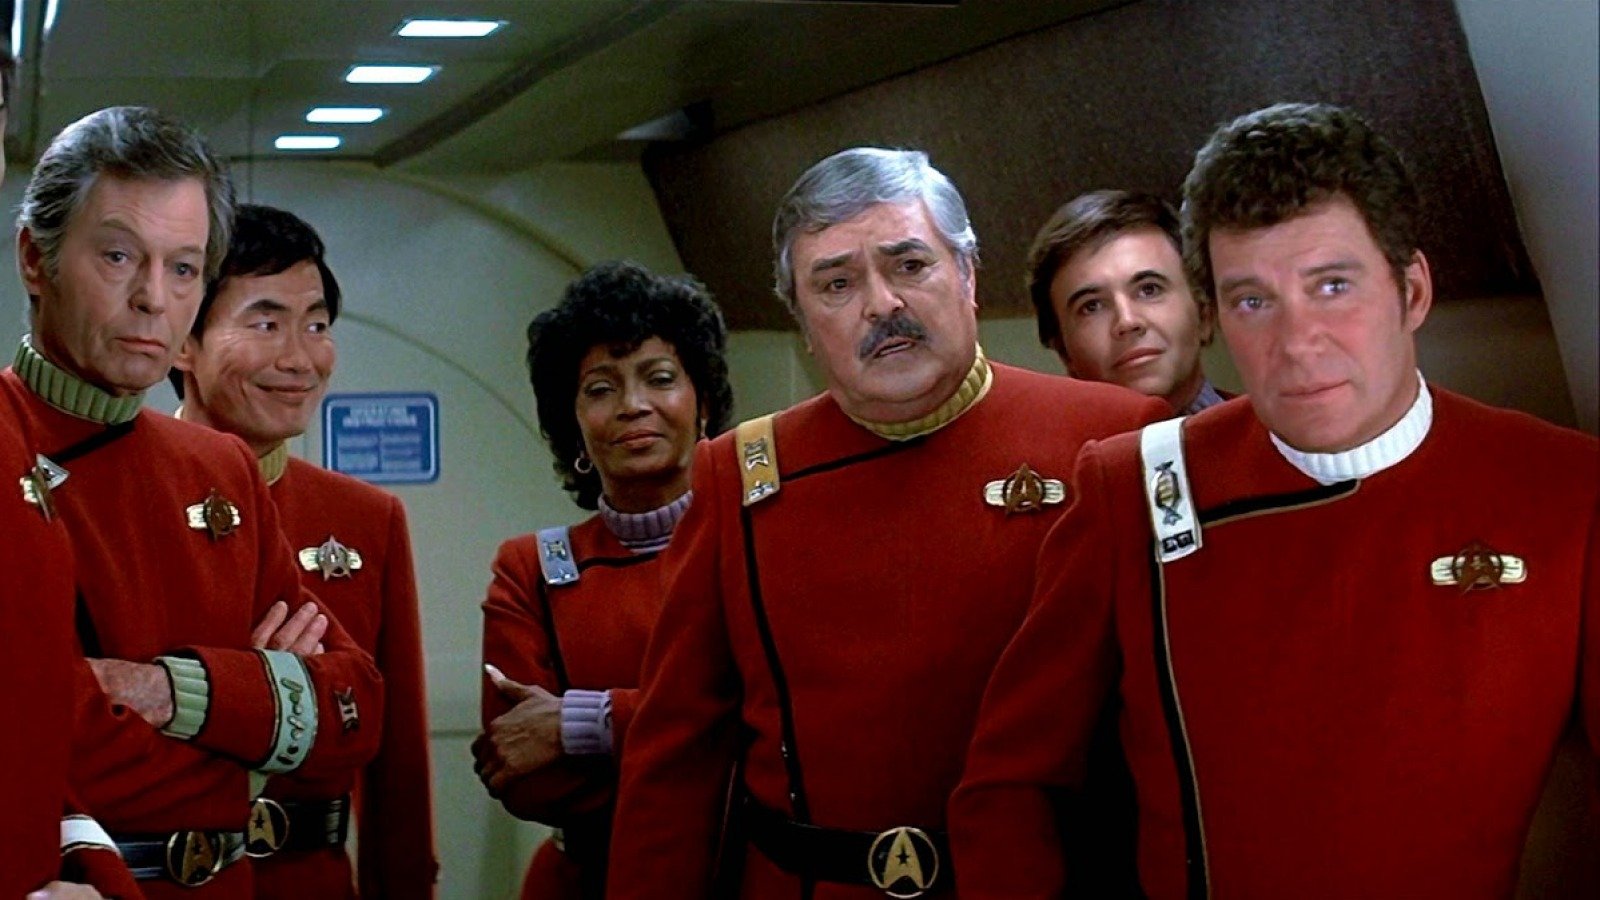 Star Trek Uniforms Fully Explained - Grunge